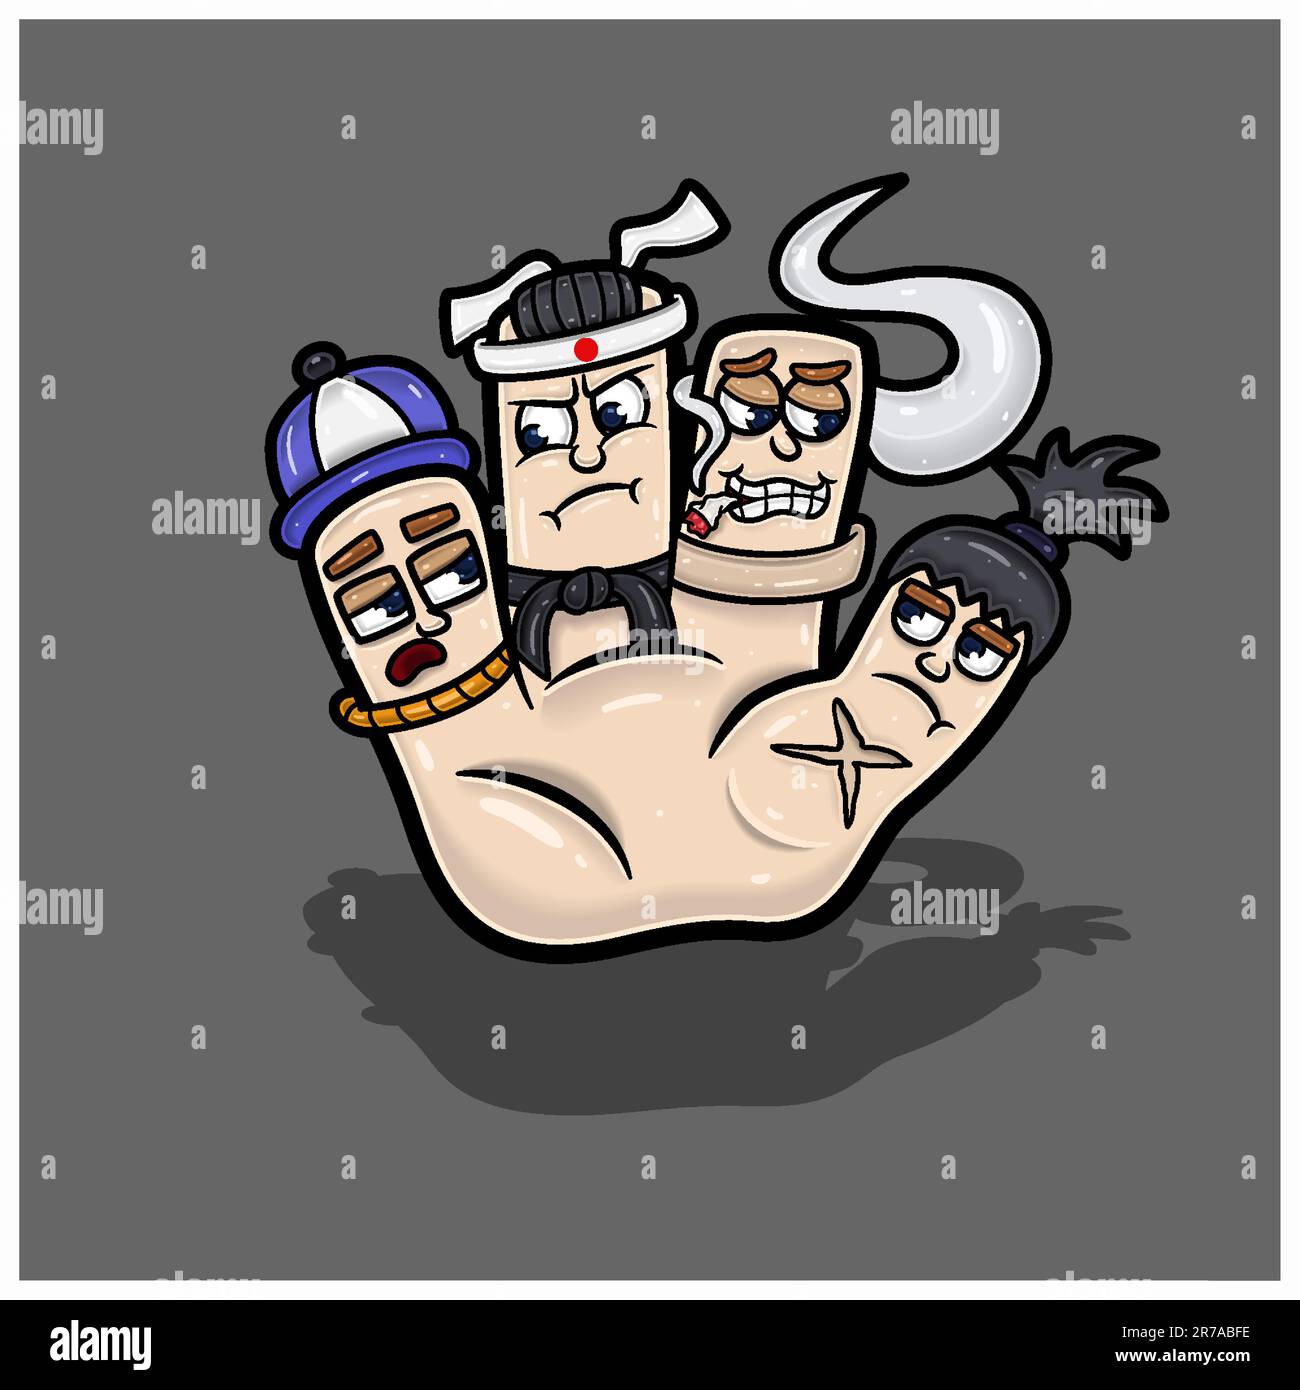 Zeichentrickfigur Vier Süße Gesichter In Der Hand. Rapper. Taekwondo, Smoker Und Samurai. Mit Einfachen Verläufen. Vektoren Und Illustrationen Stock Vektor